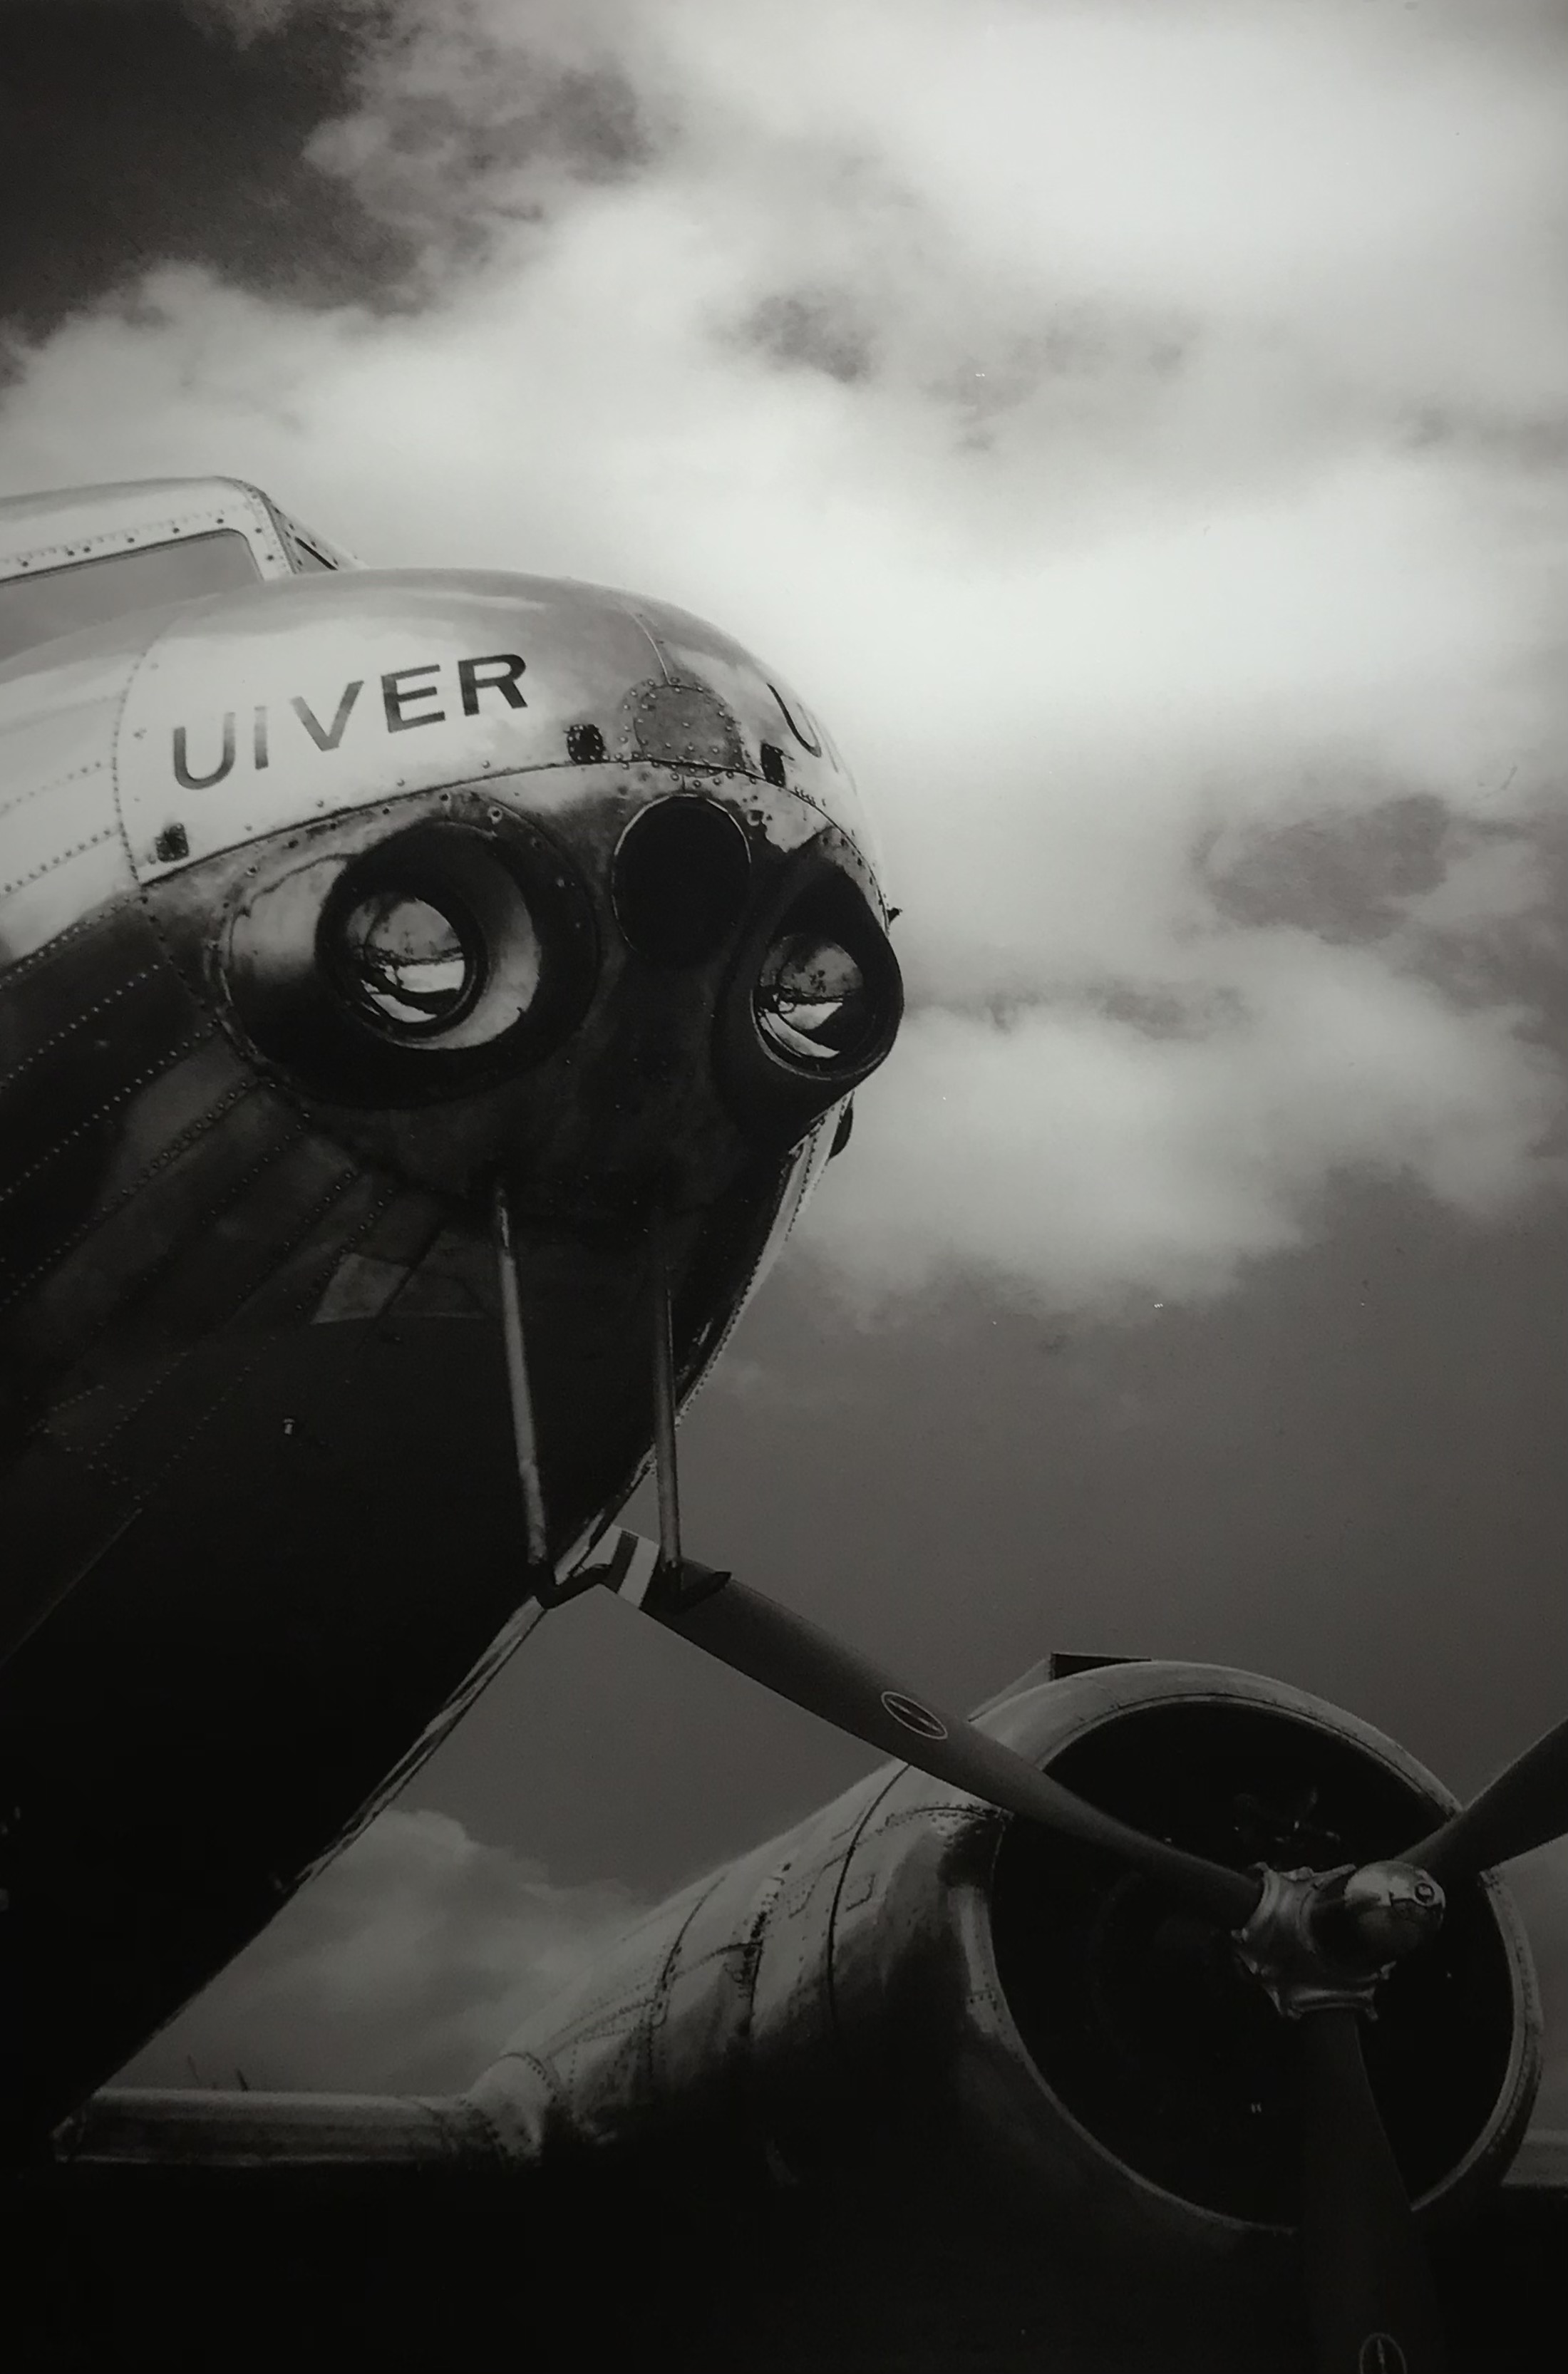 Kunst op glas van het vliegtuig: 'De UIVER', Nederlandse geschiedenis, prachtig!